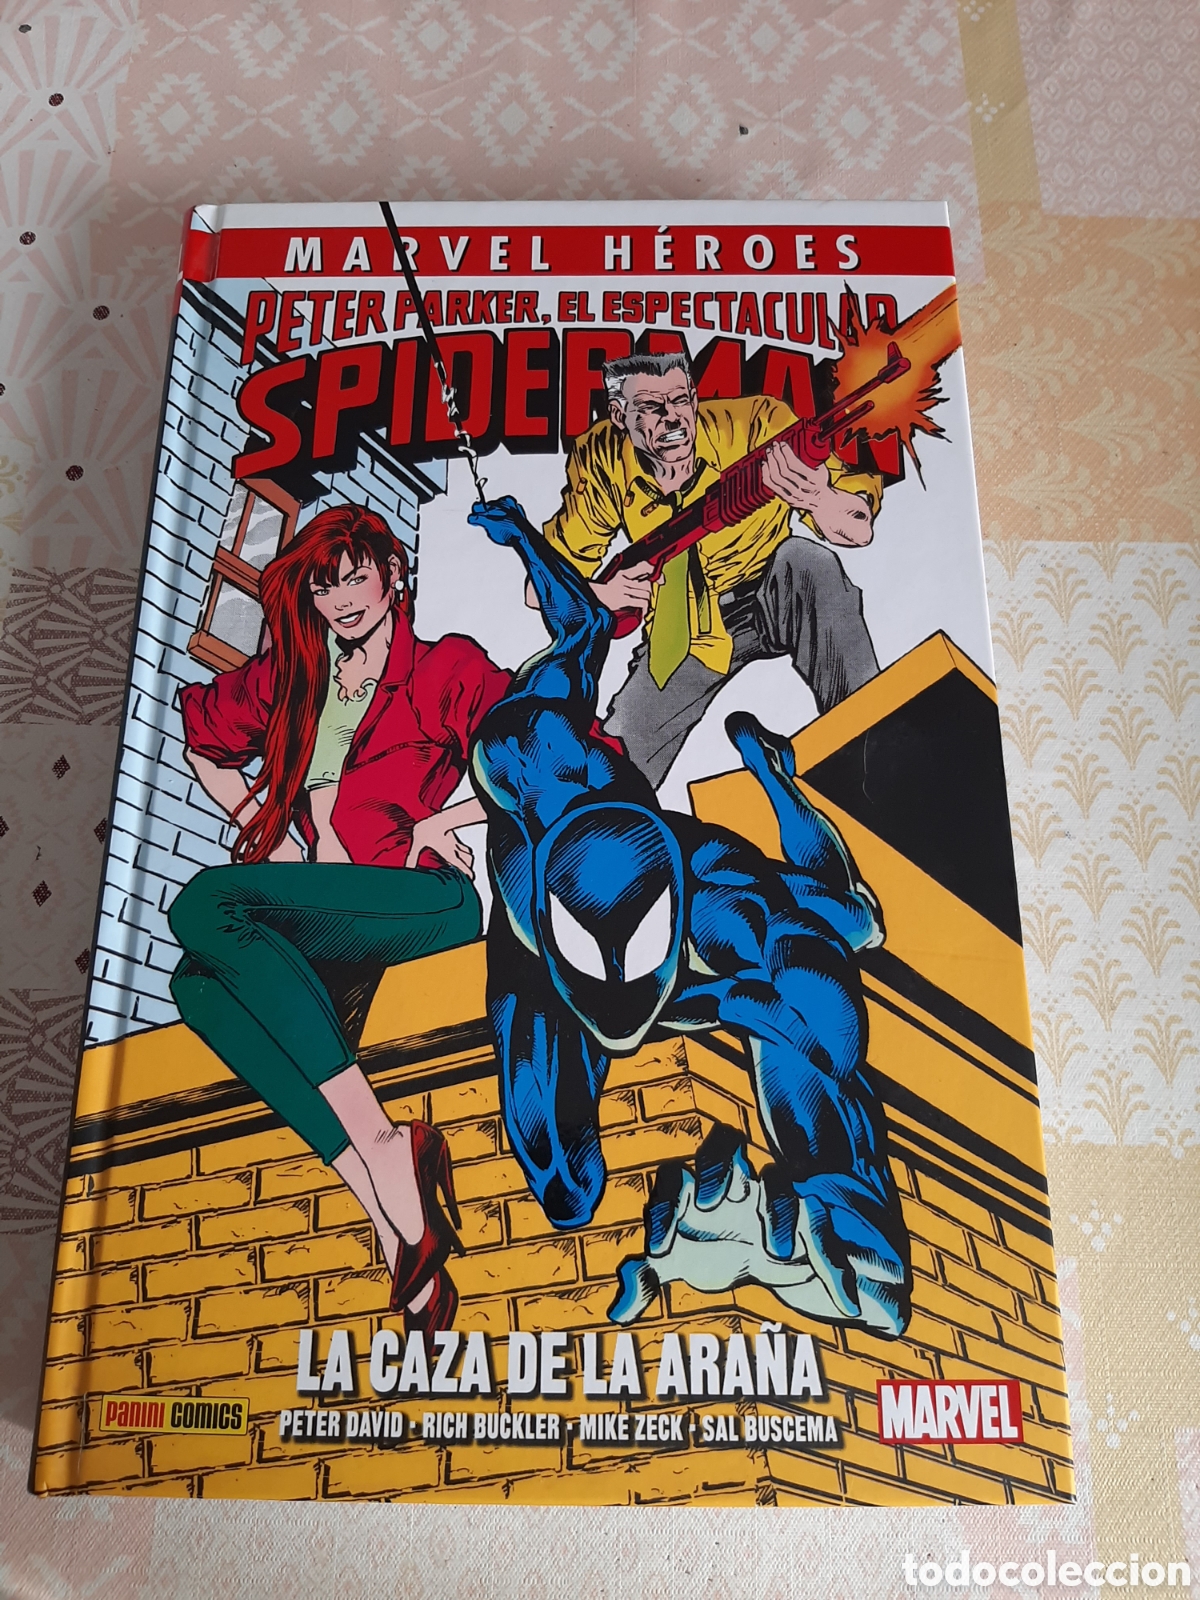 spiderman la caza de la araña, marvel héroes 80 - Buy Marvel comics,  publisher Panini on todocoleccion